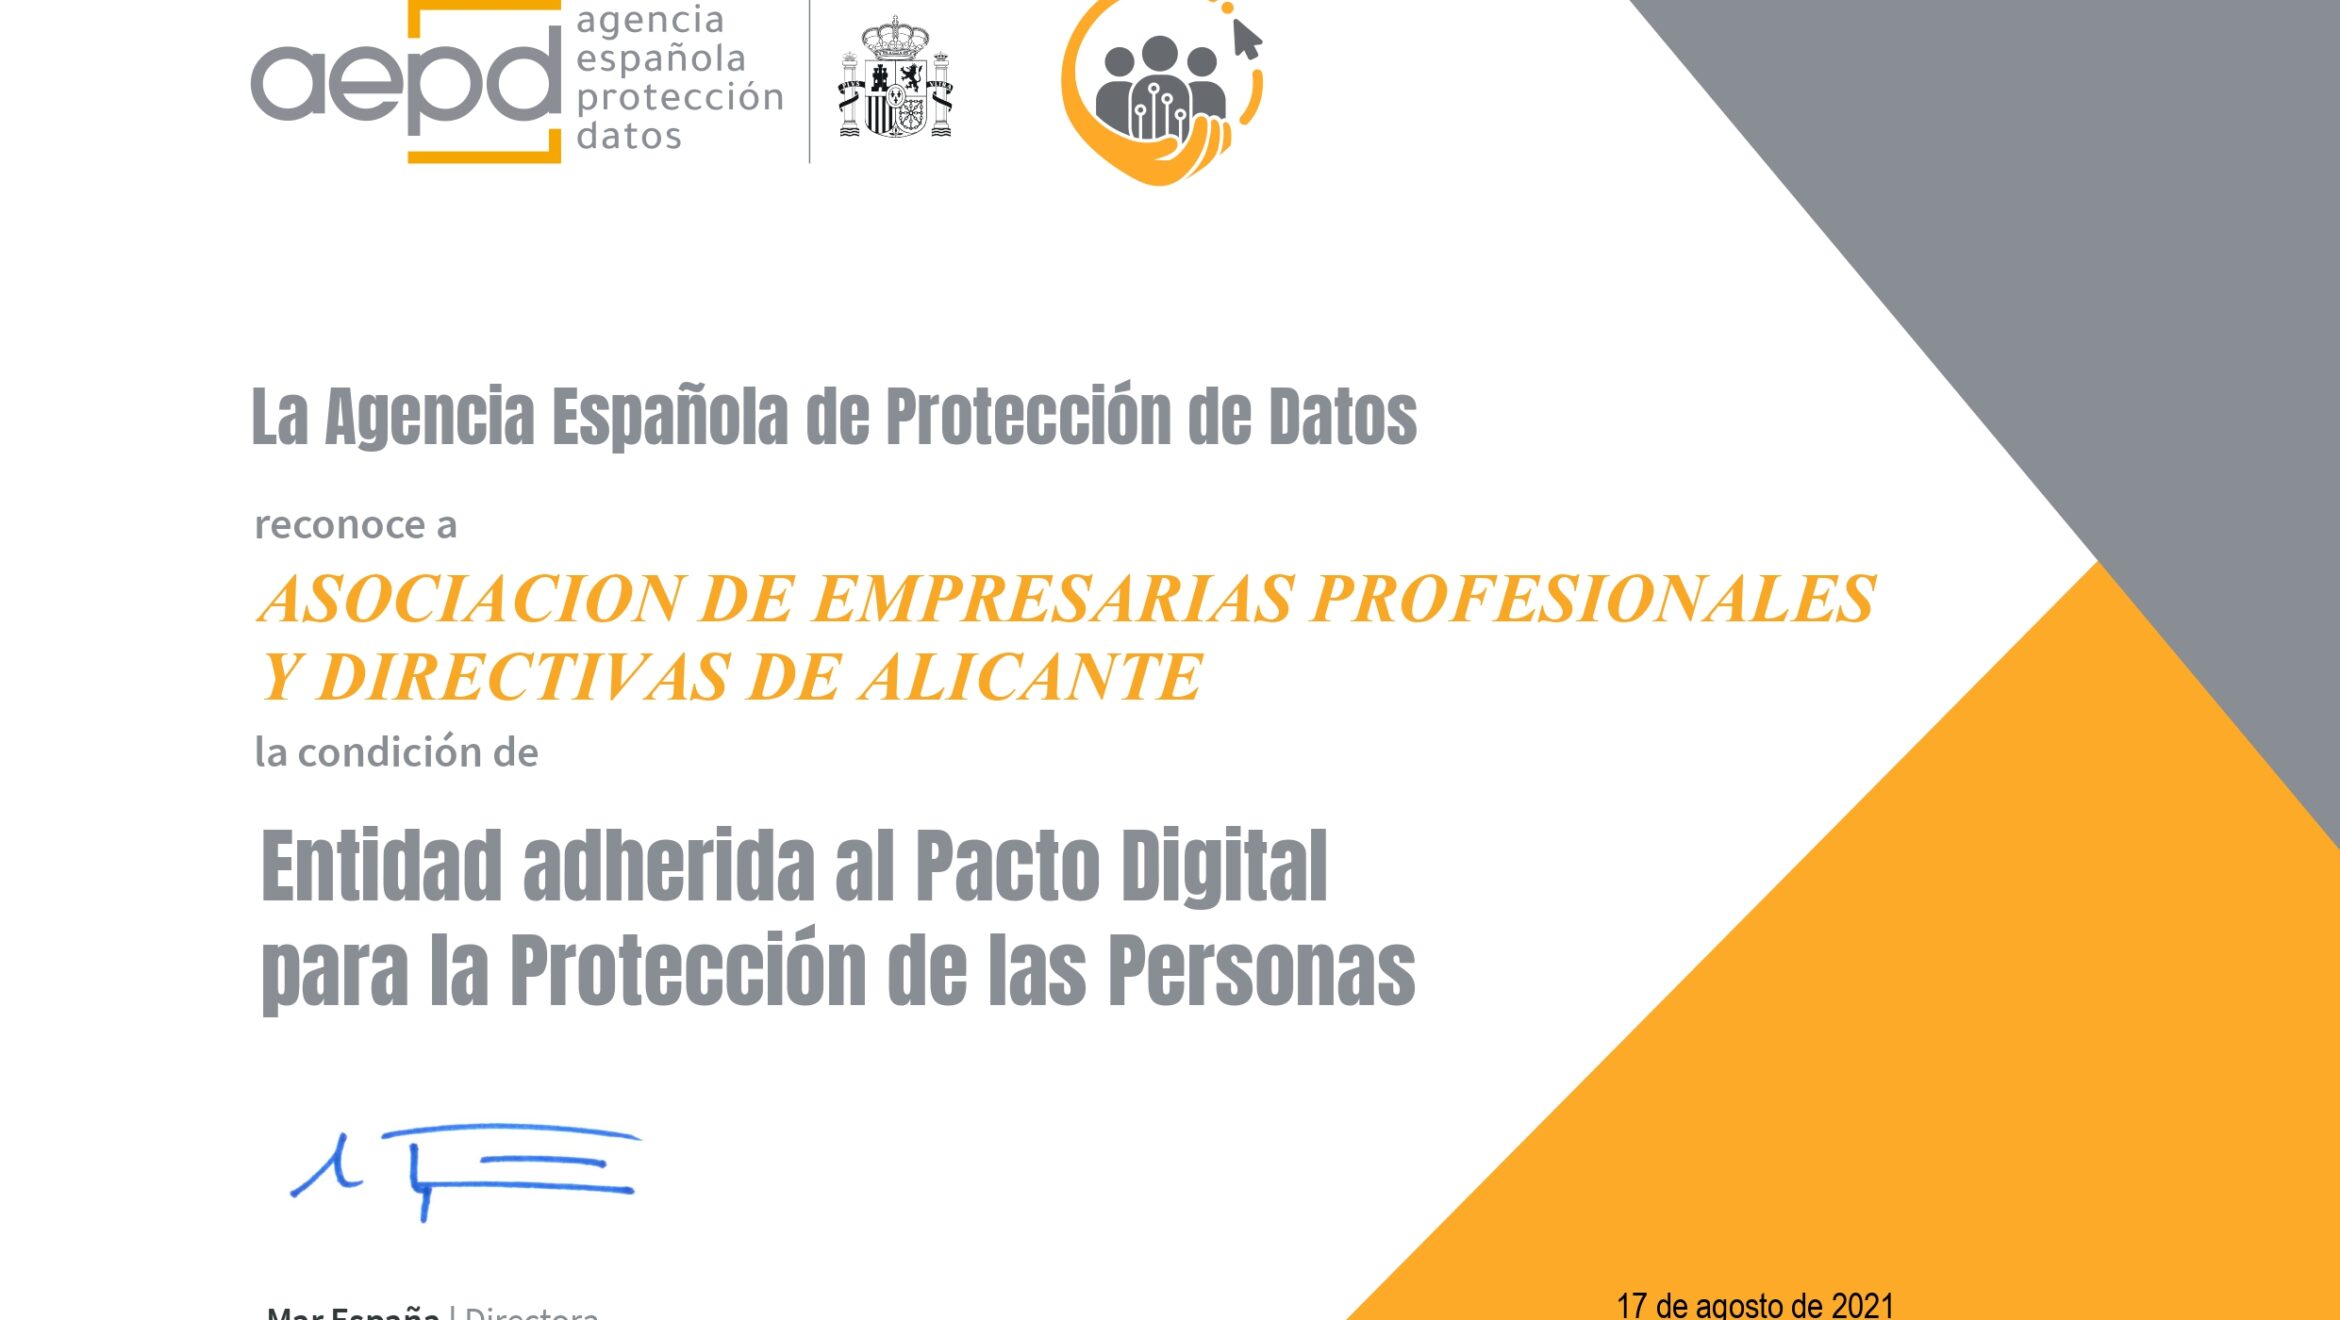 AEPA se adhiere al pacto digital para la protección de las personas.